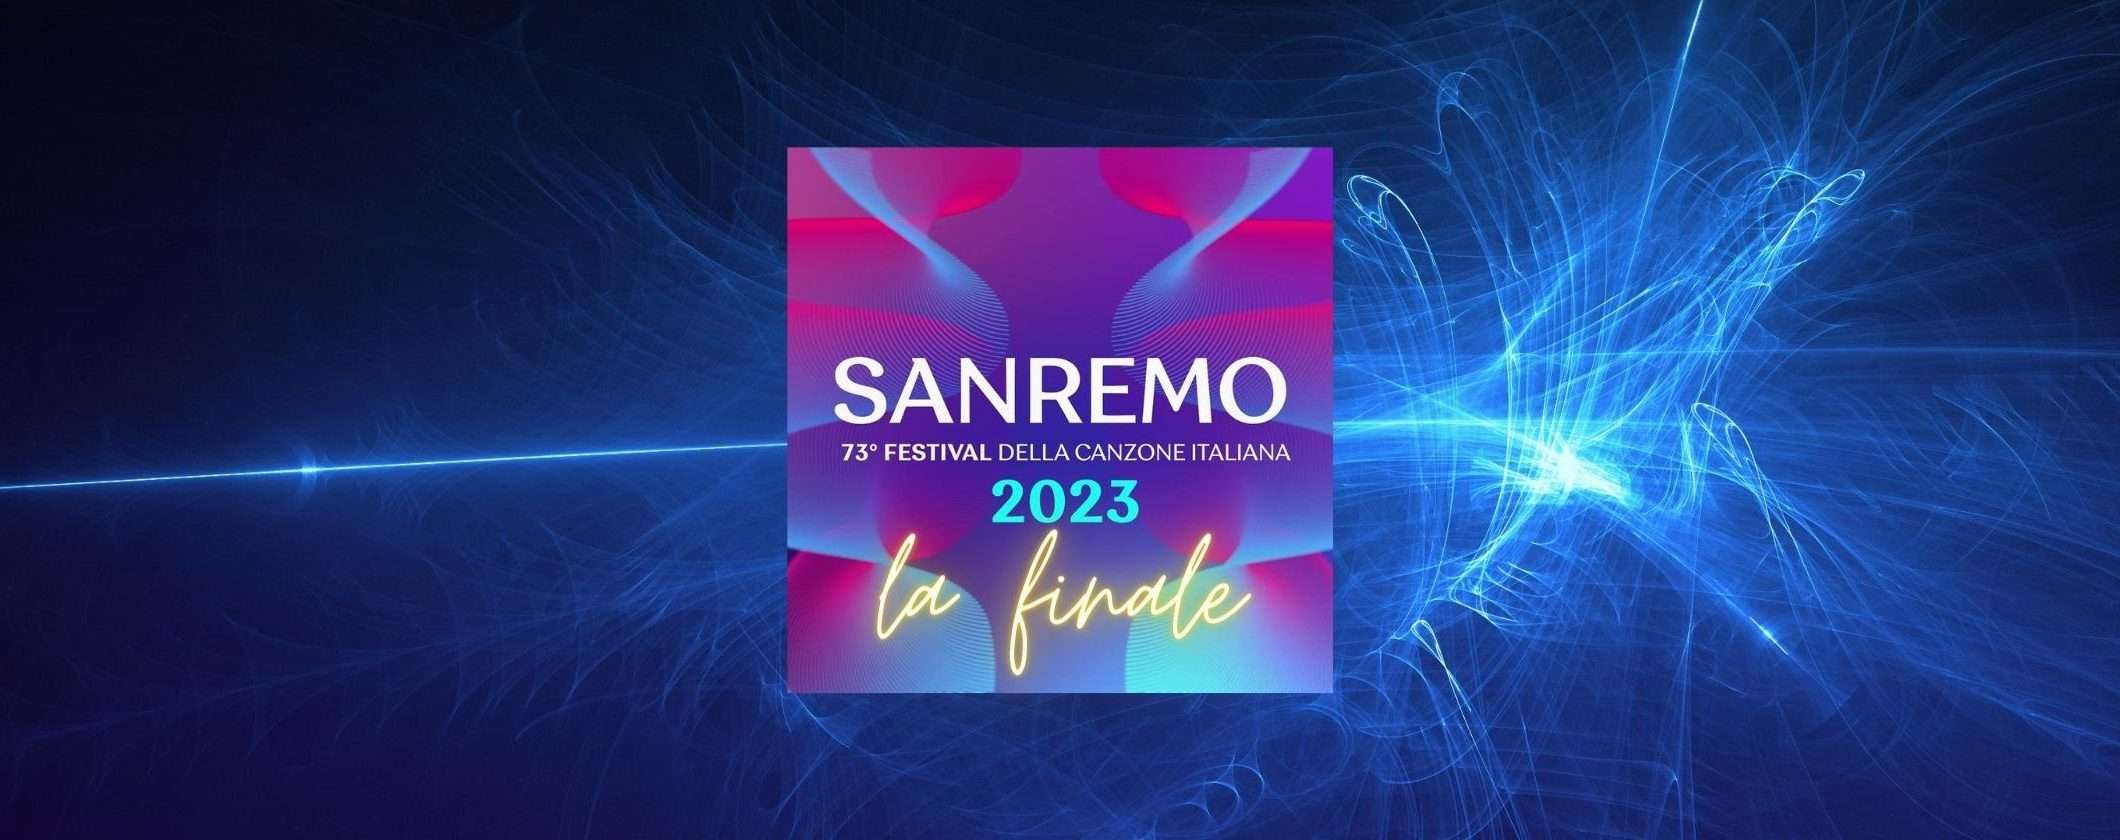 Sanremo 2023: come vedere la finale in streaming, anche dall'estero